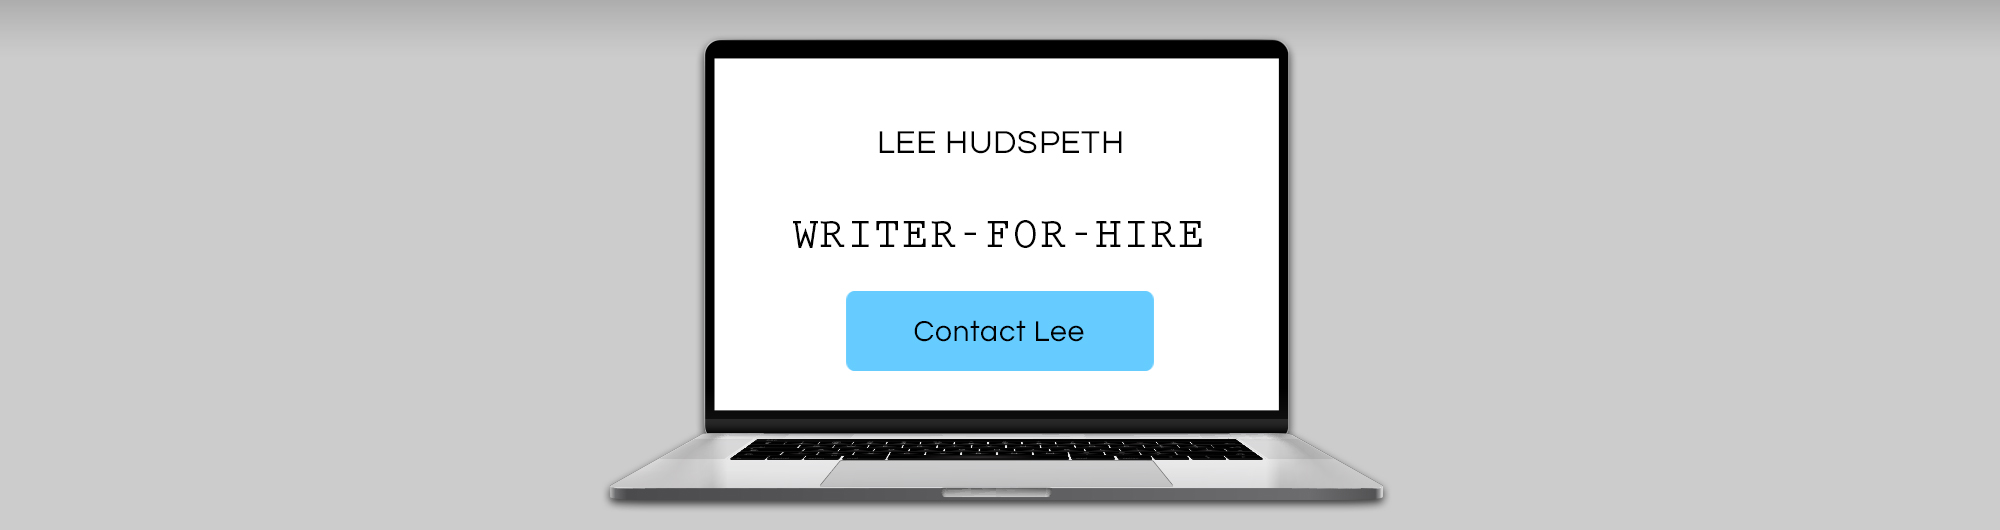 Lee Hudspeth writer for hire